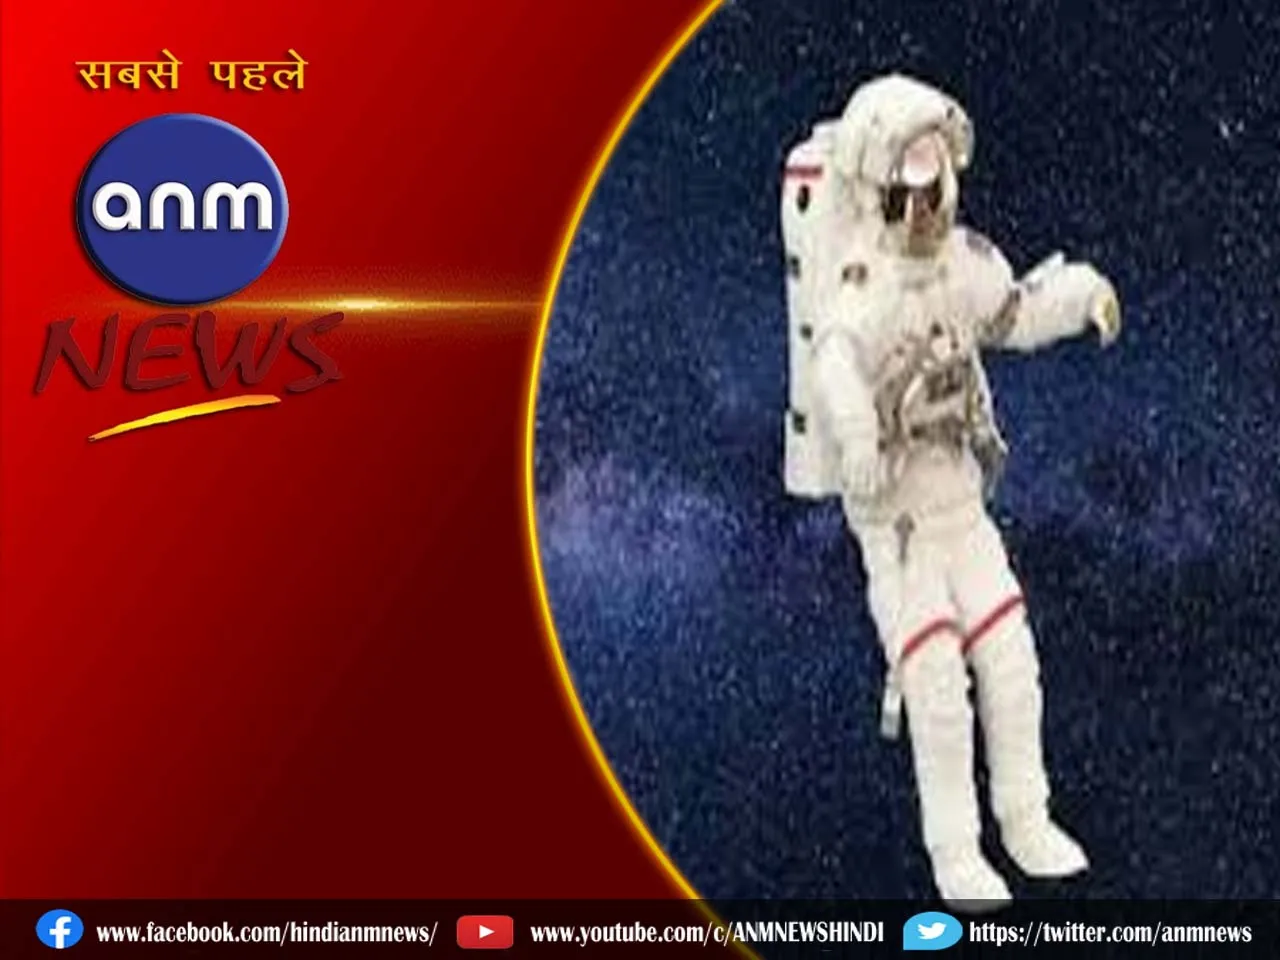 जानिए कौन है भारत के 4 अंतरिक्ष यात्री जो जाएंगे स्पेस में?